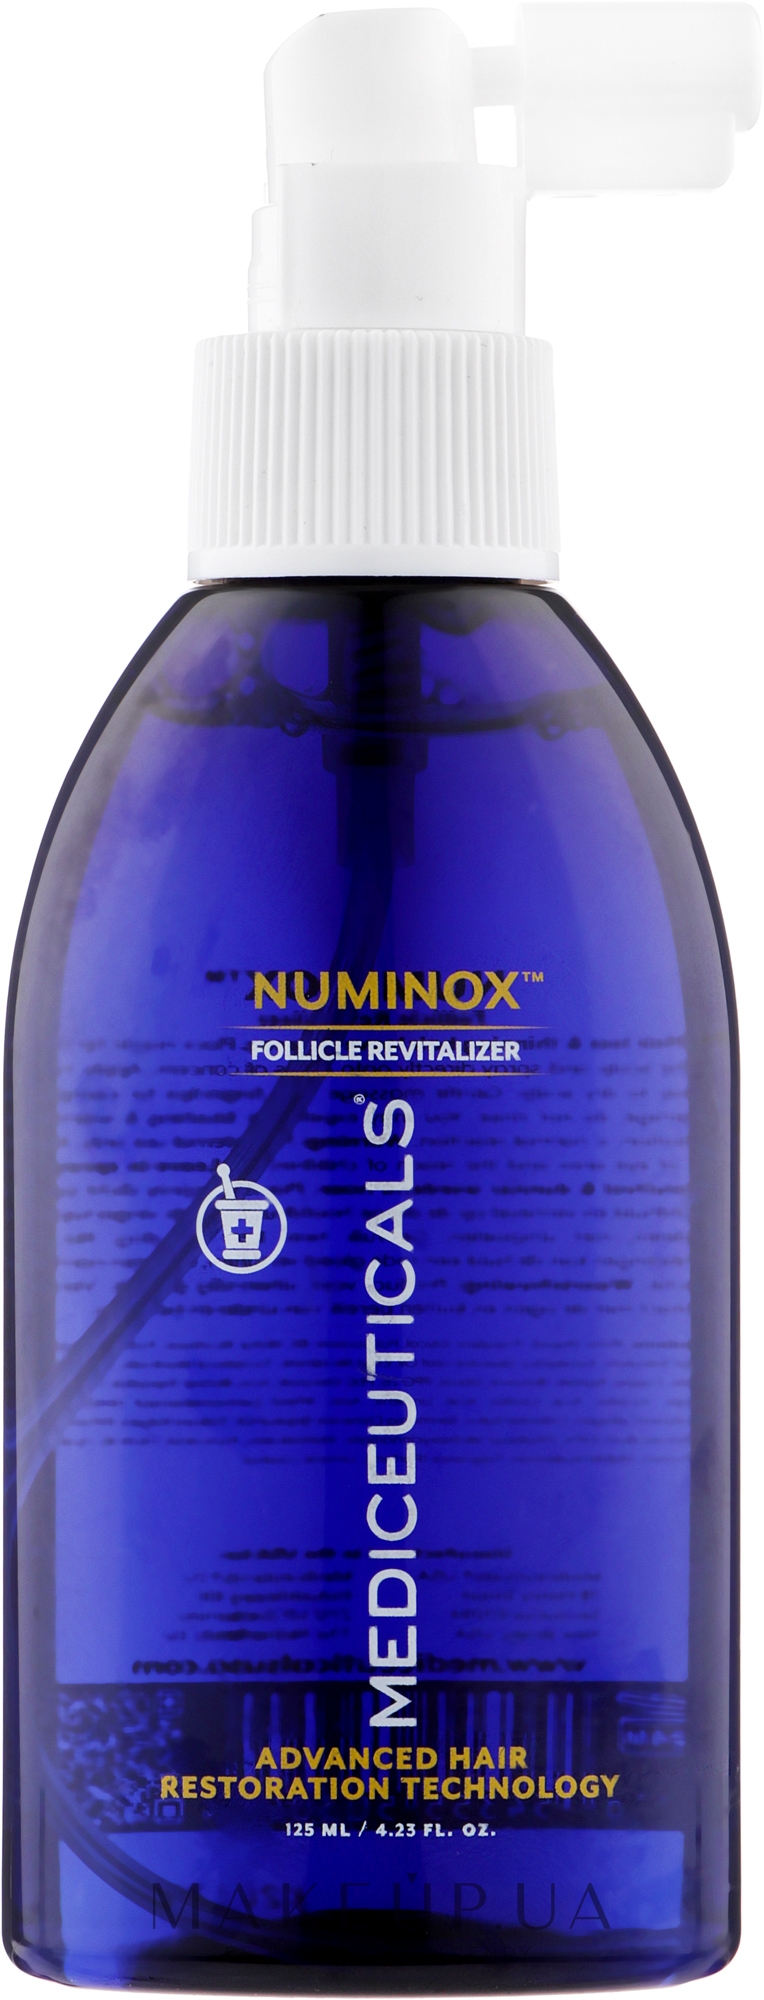 Стимулирующая сыворотка для мужчин для роста волос и здоровья кожи головы - Mediceuticals Advanced Hair Restoration Technology Numinox  — фото 125ml